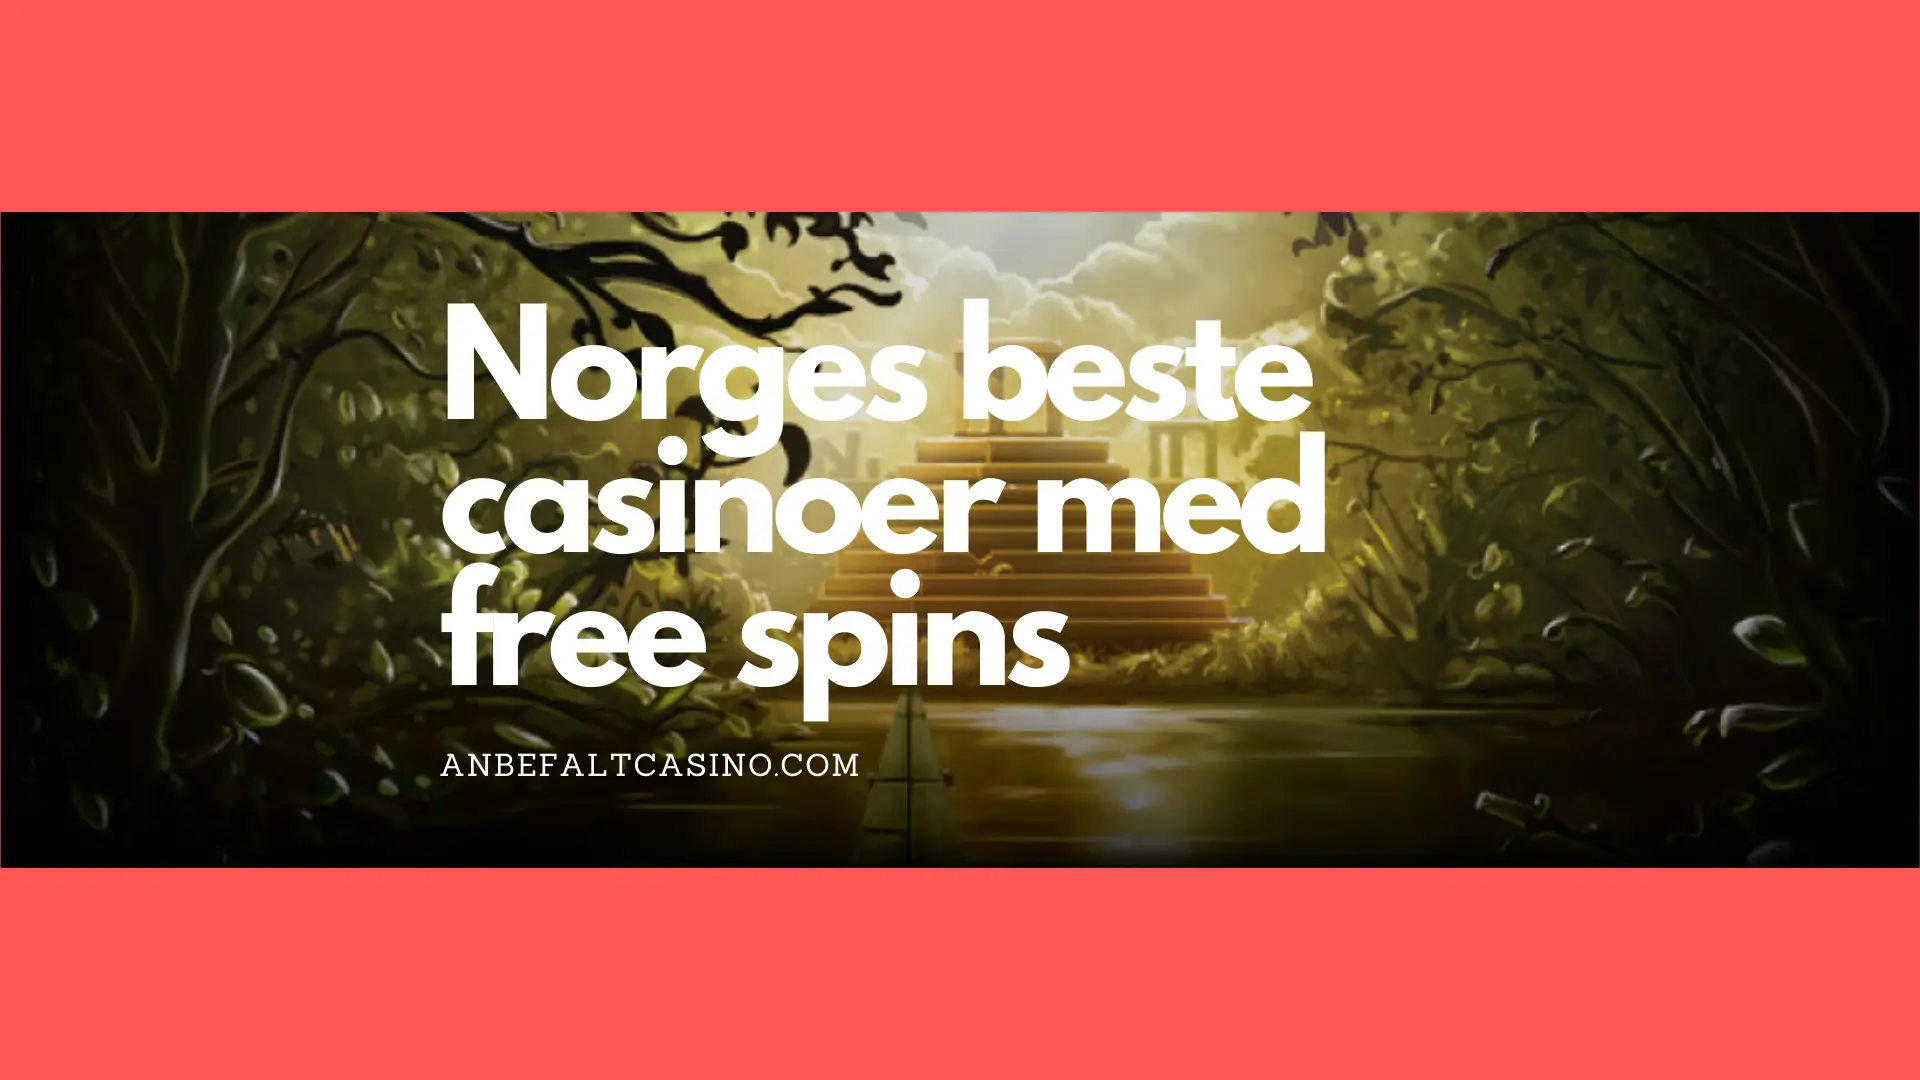 Norges beste casinoer med free spins